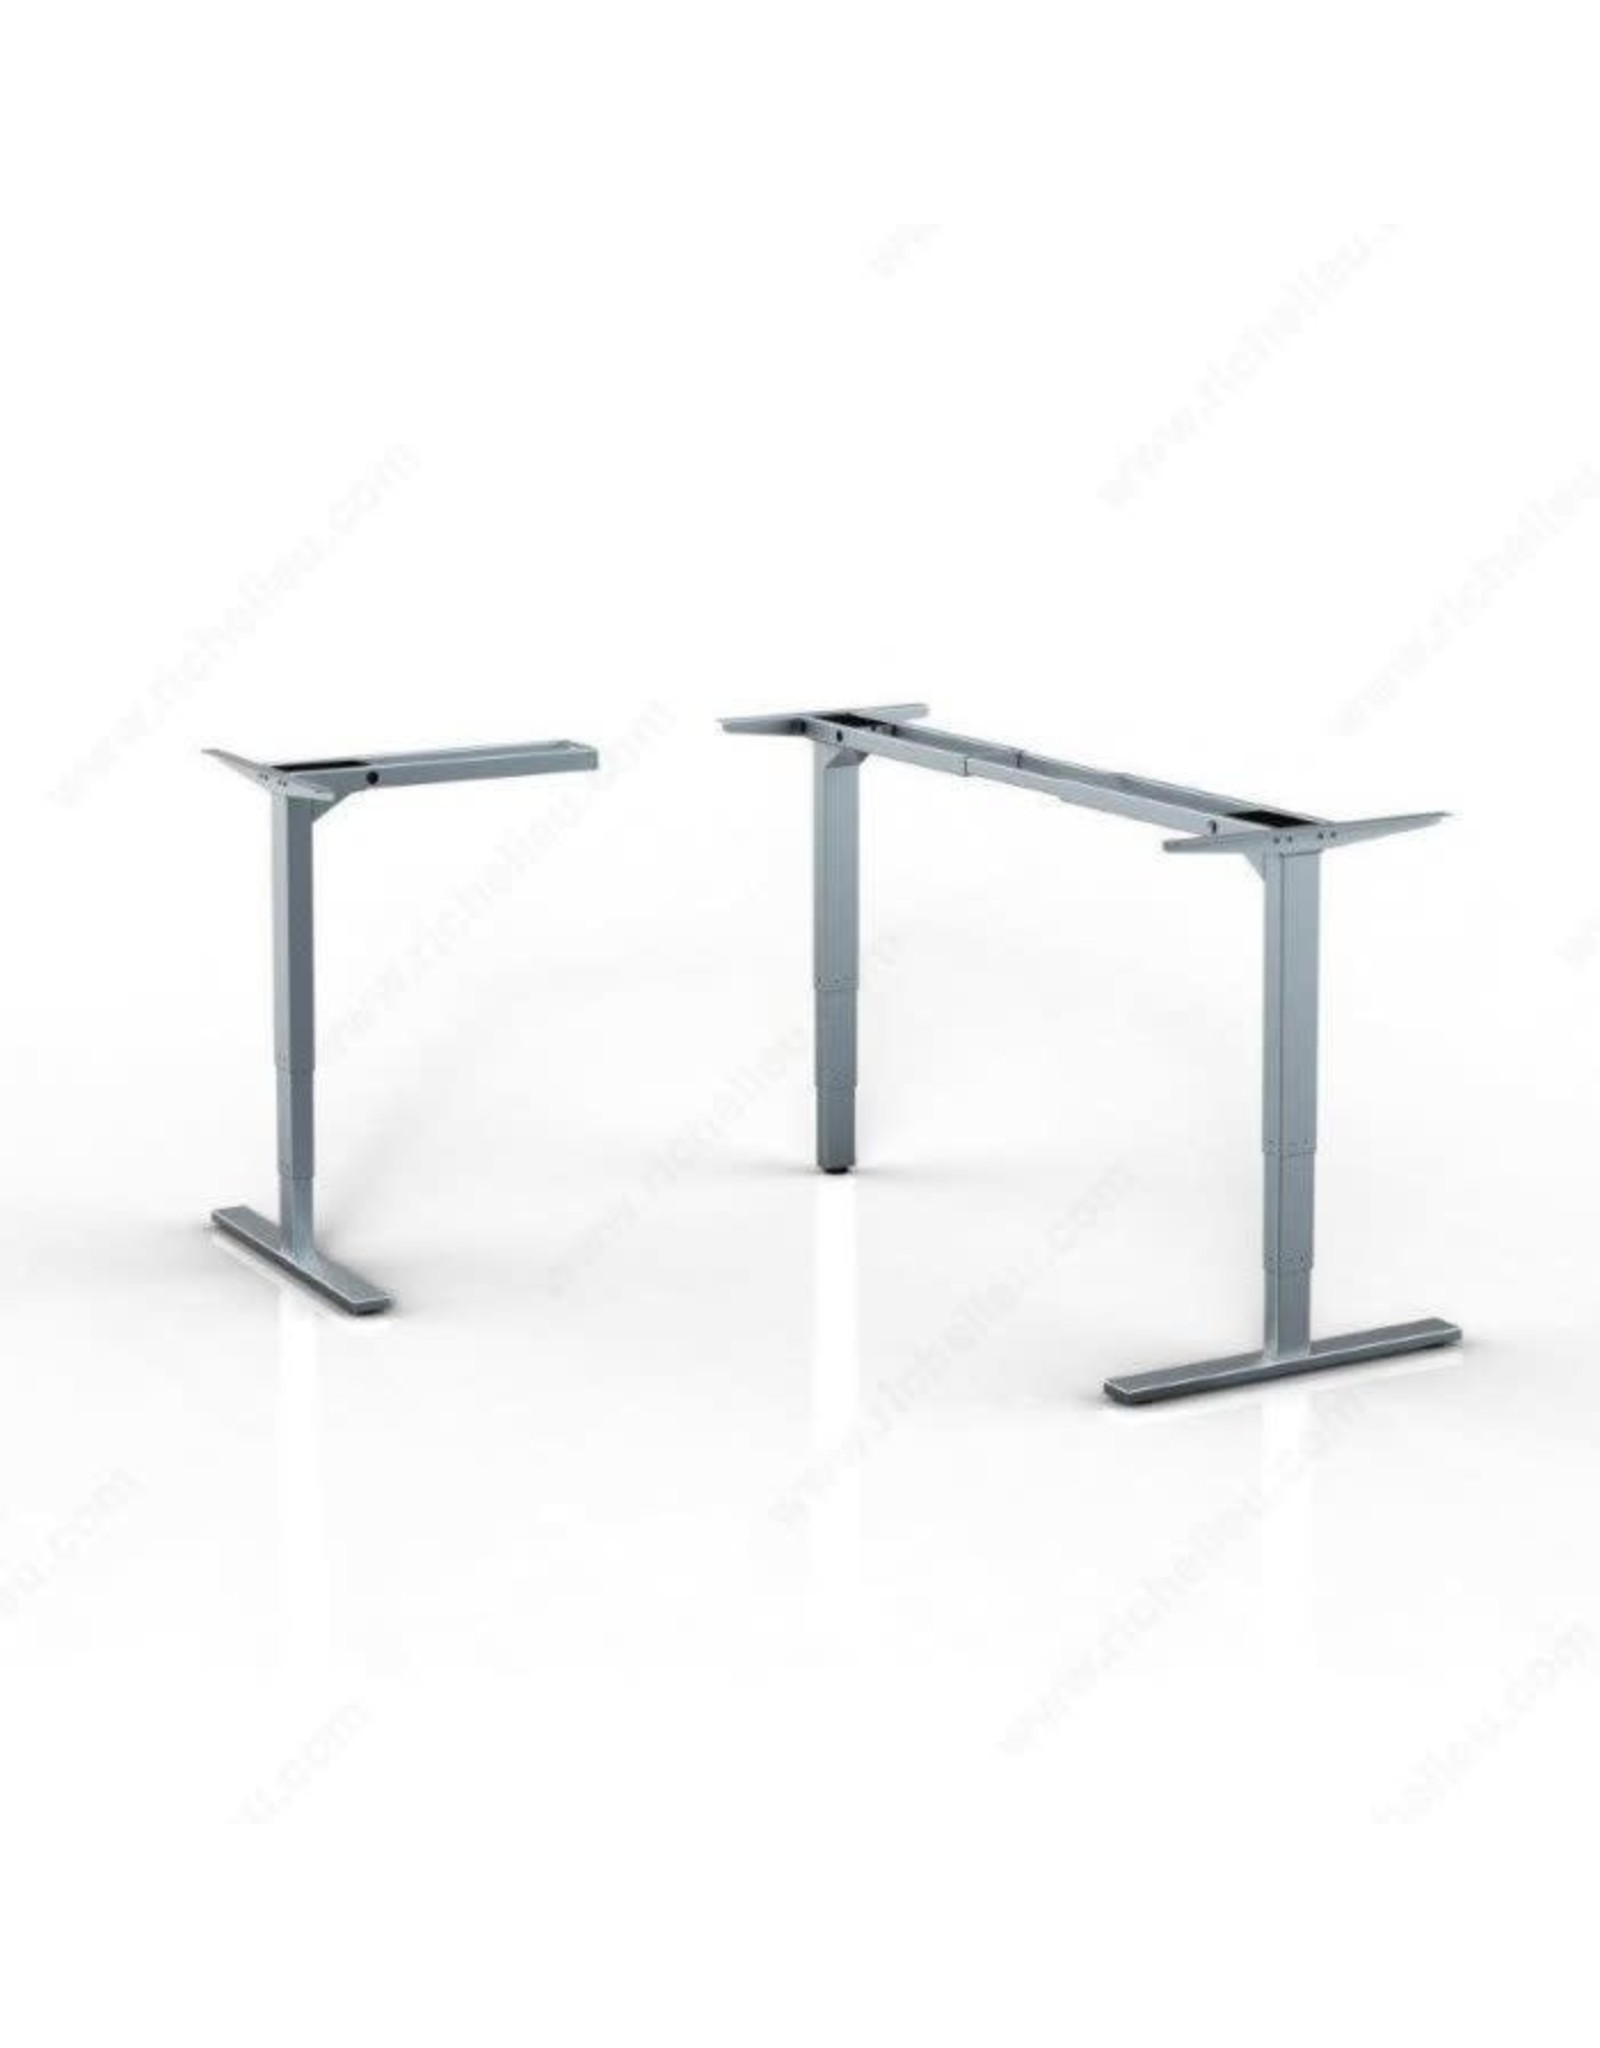 Unite 3 Leg Height Adjustable Table Legs - Silver